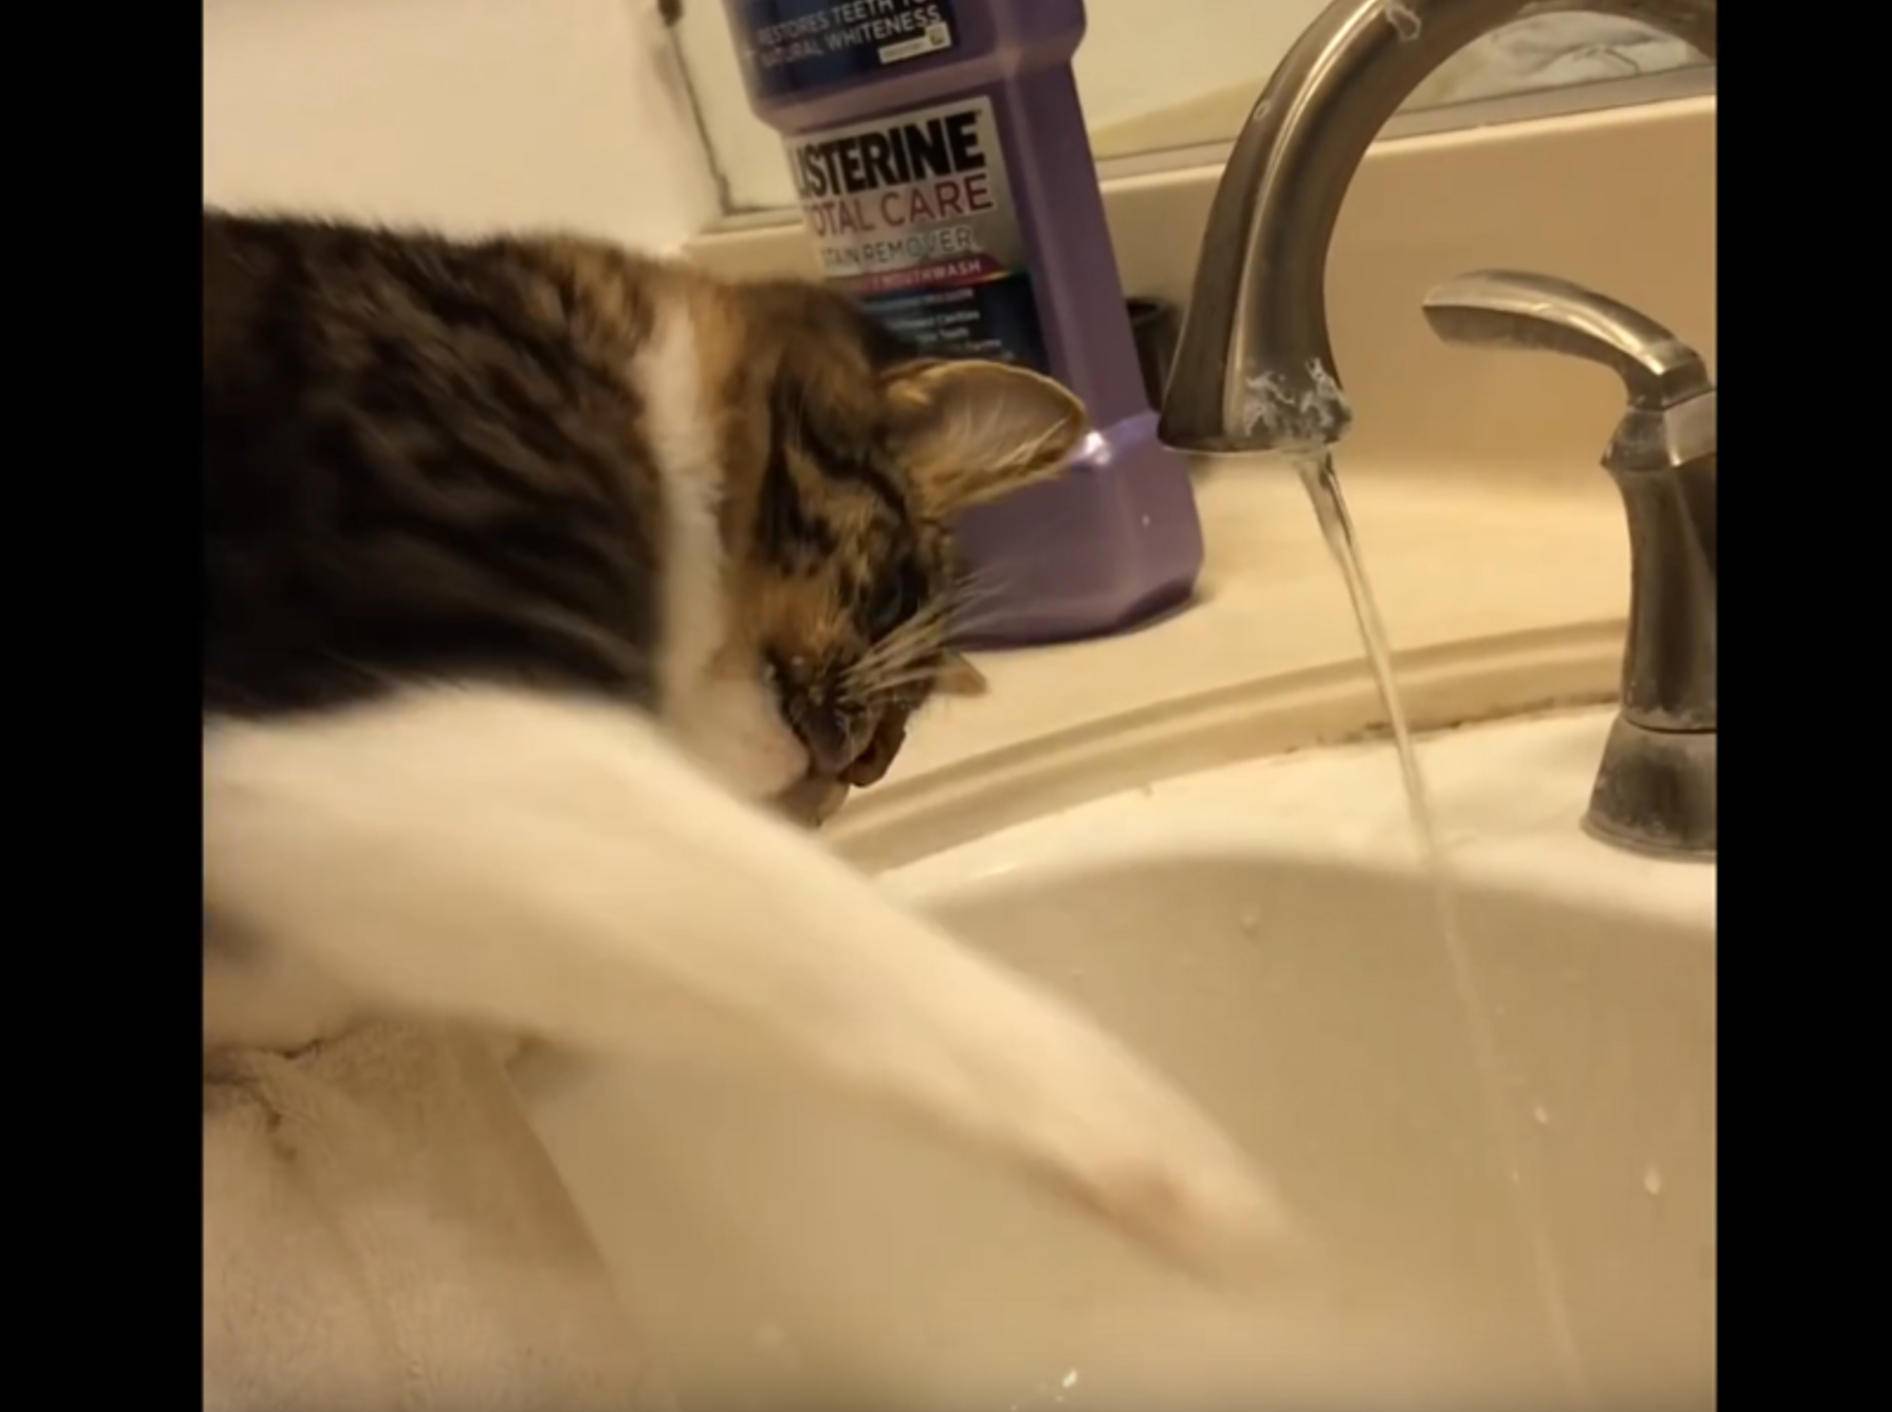 Plitsch-platsch! Katze Rosie spielt mit Wasser aus dem Wasserhahn – YouTube / Lilothehusky